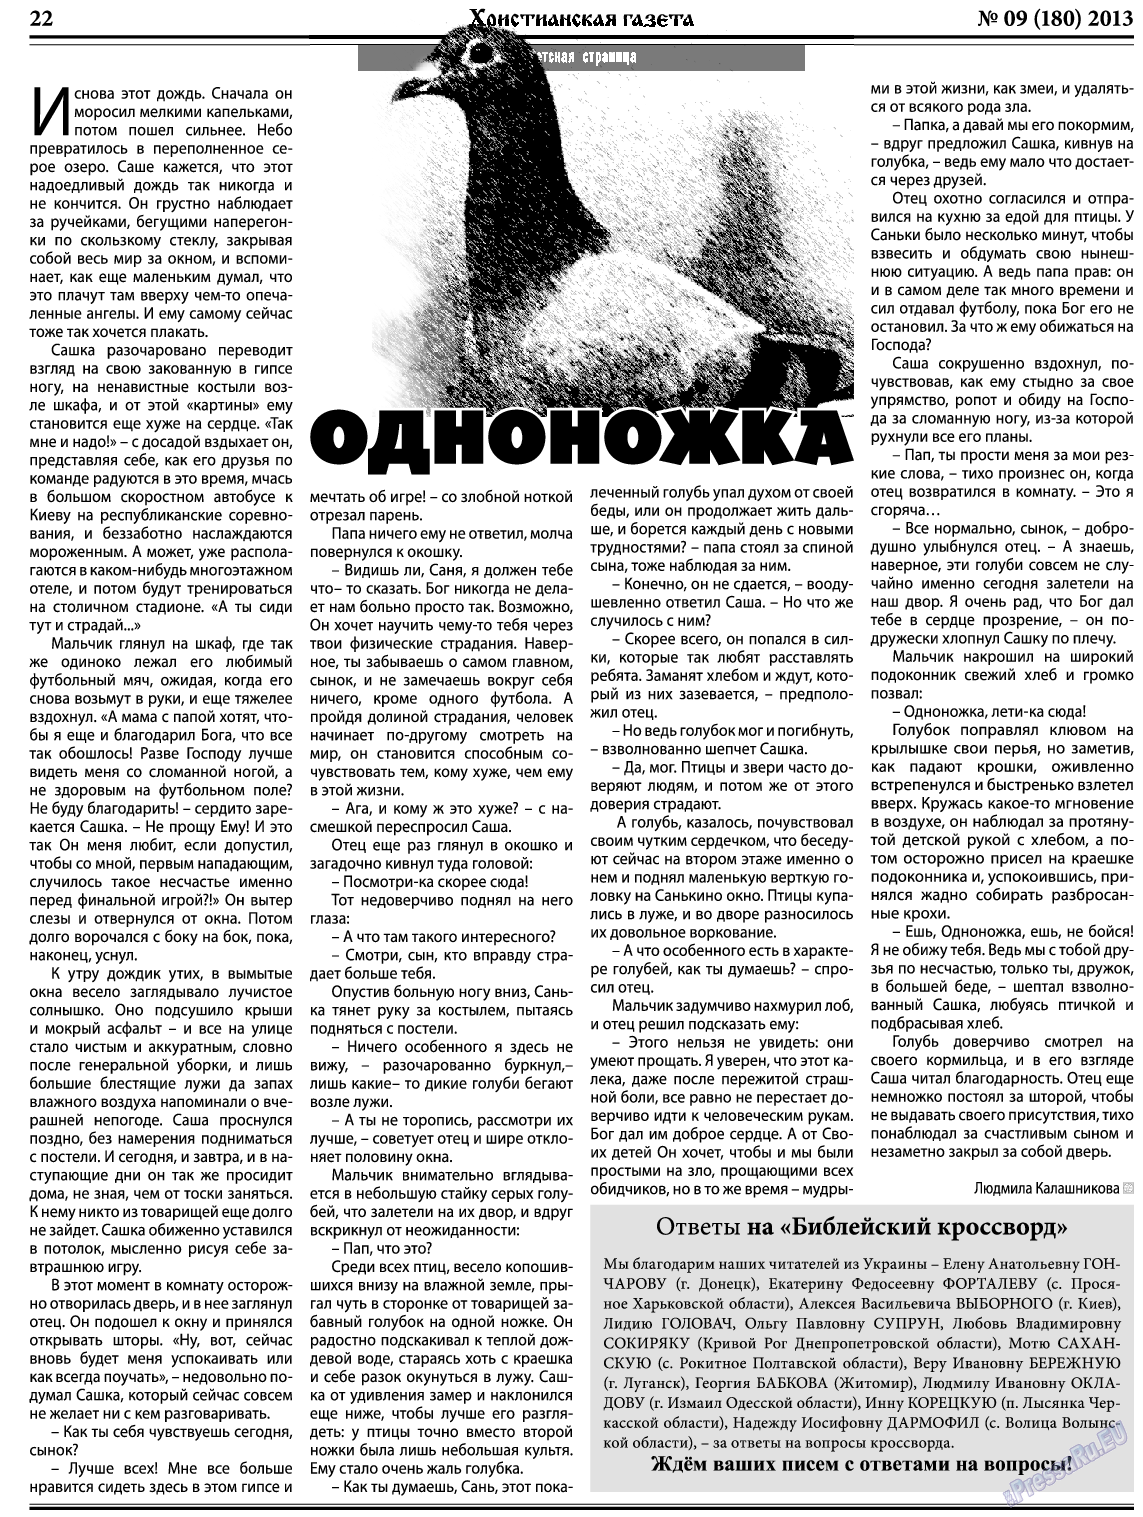 Христианская газета, газета. 2013 №9 стр.30